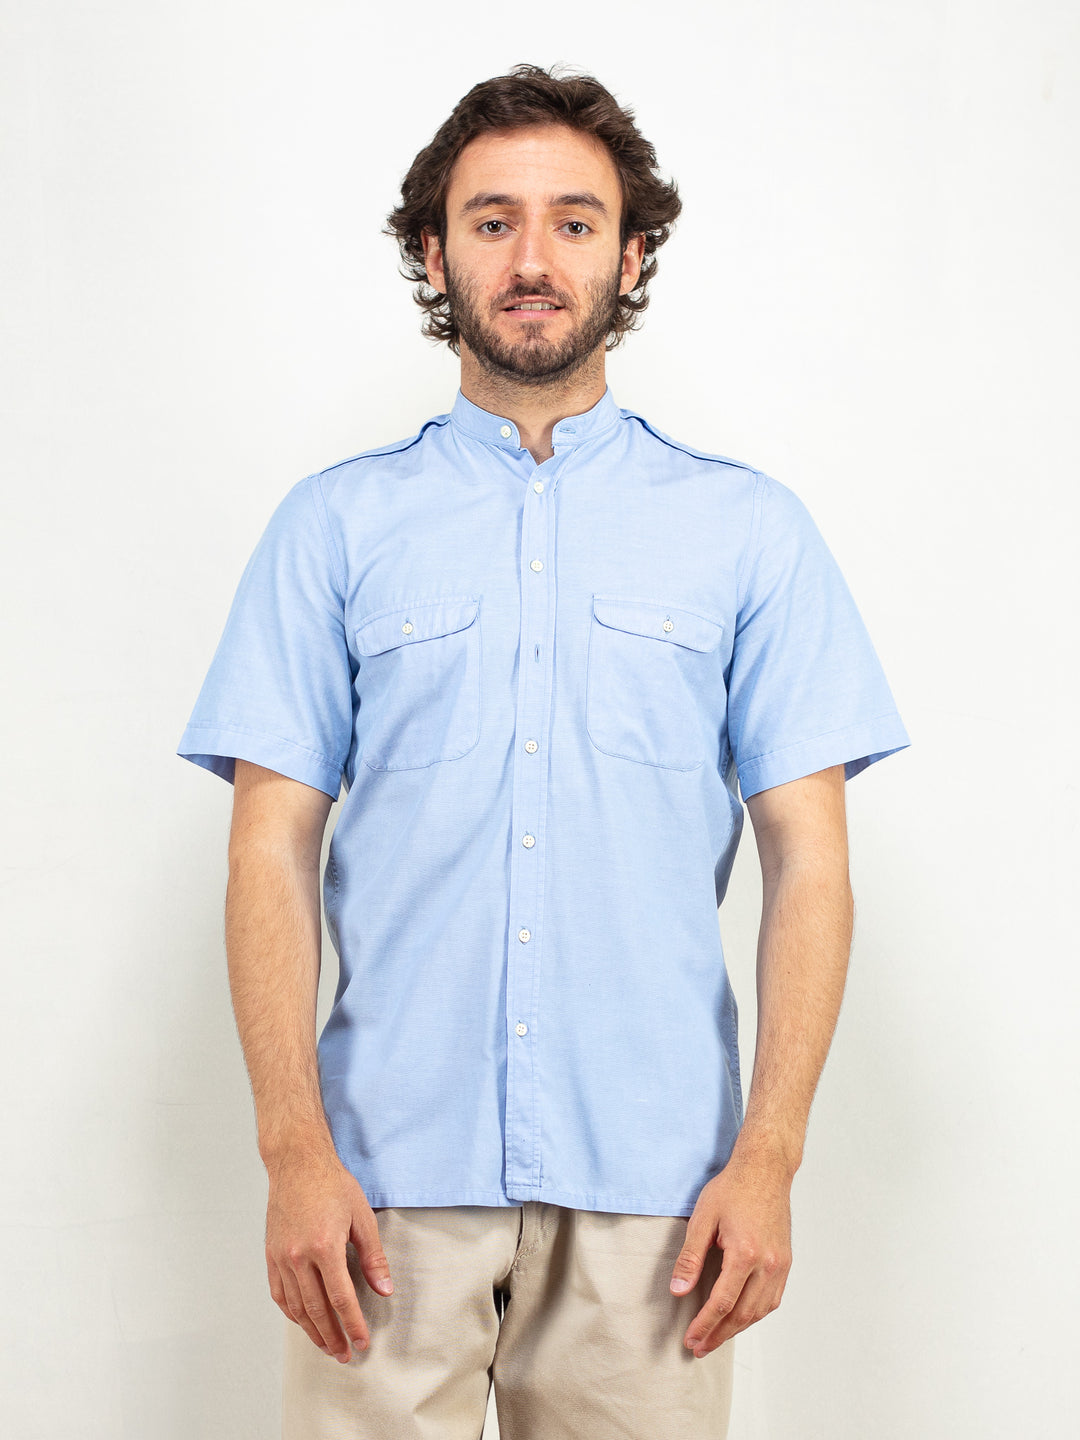  Men Collarless Shirt 90's vintage modern summer shirt minimalist shirt classic short sleeve blue office shirt band collar shirt size small s